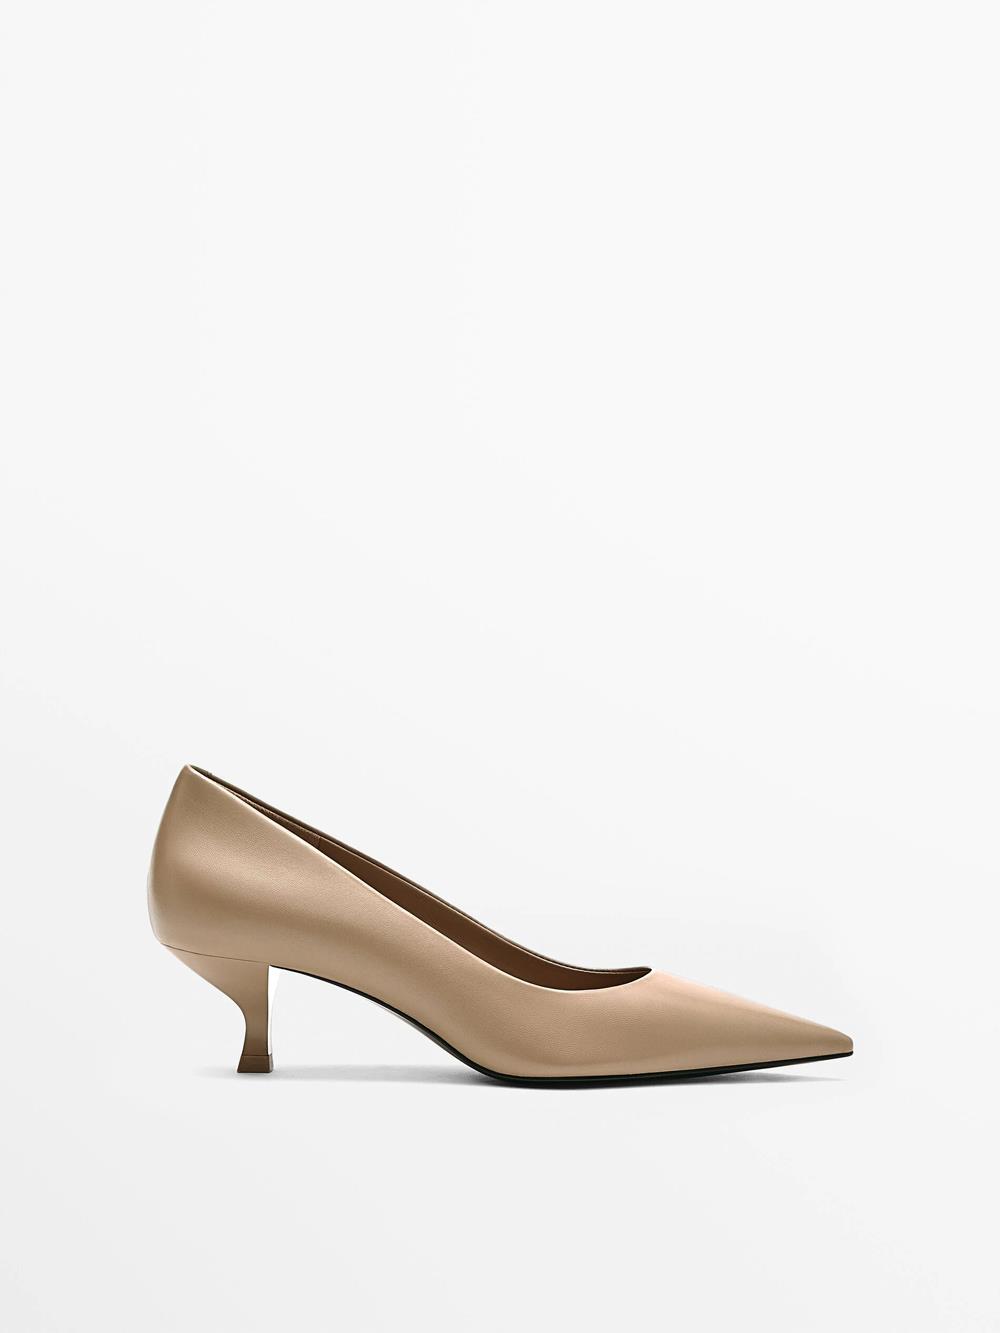 Zapatos clásicos de piel de tacón cómodo, de Massimo Dutti